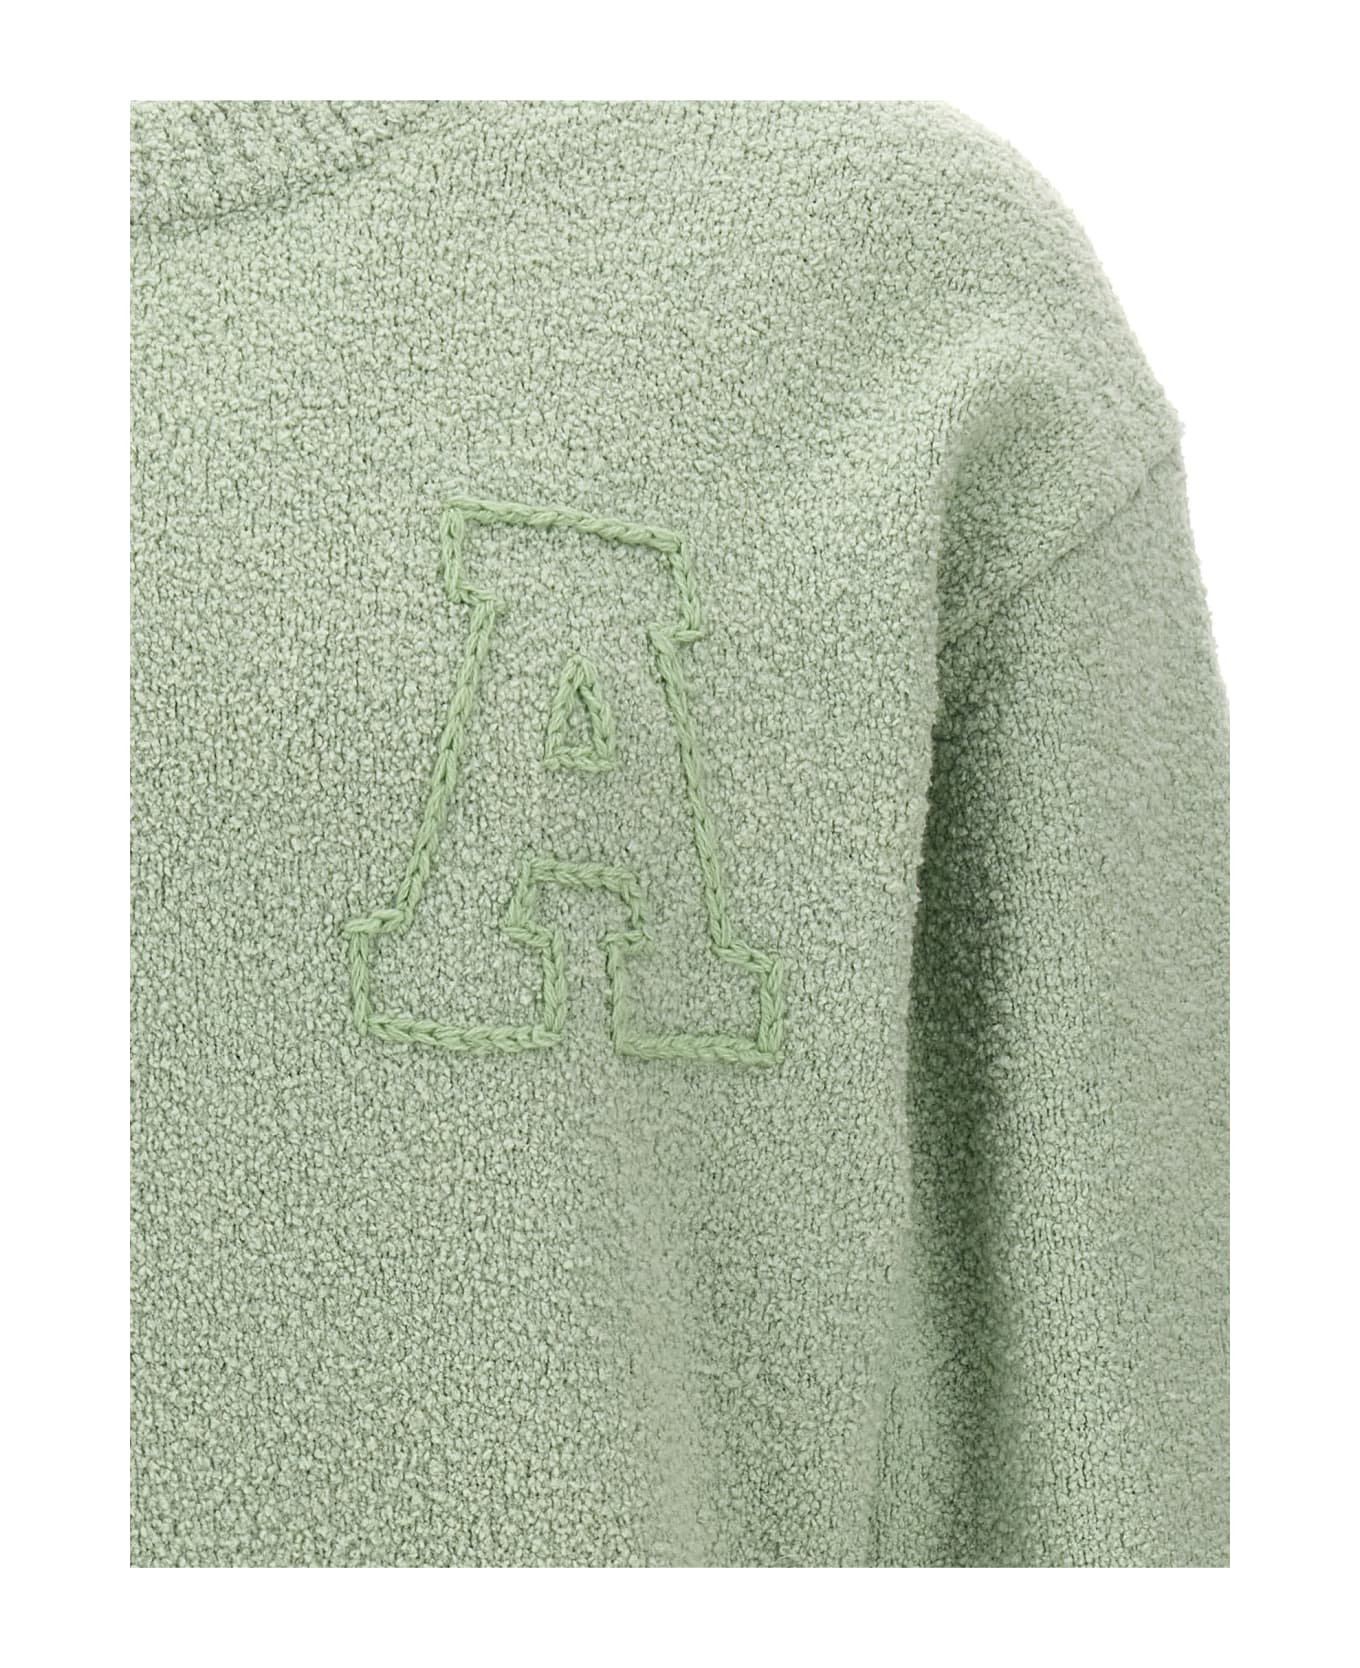 Axel Arigato 'radar' Sweater - Green ニットウェア